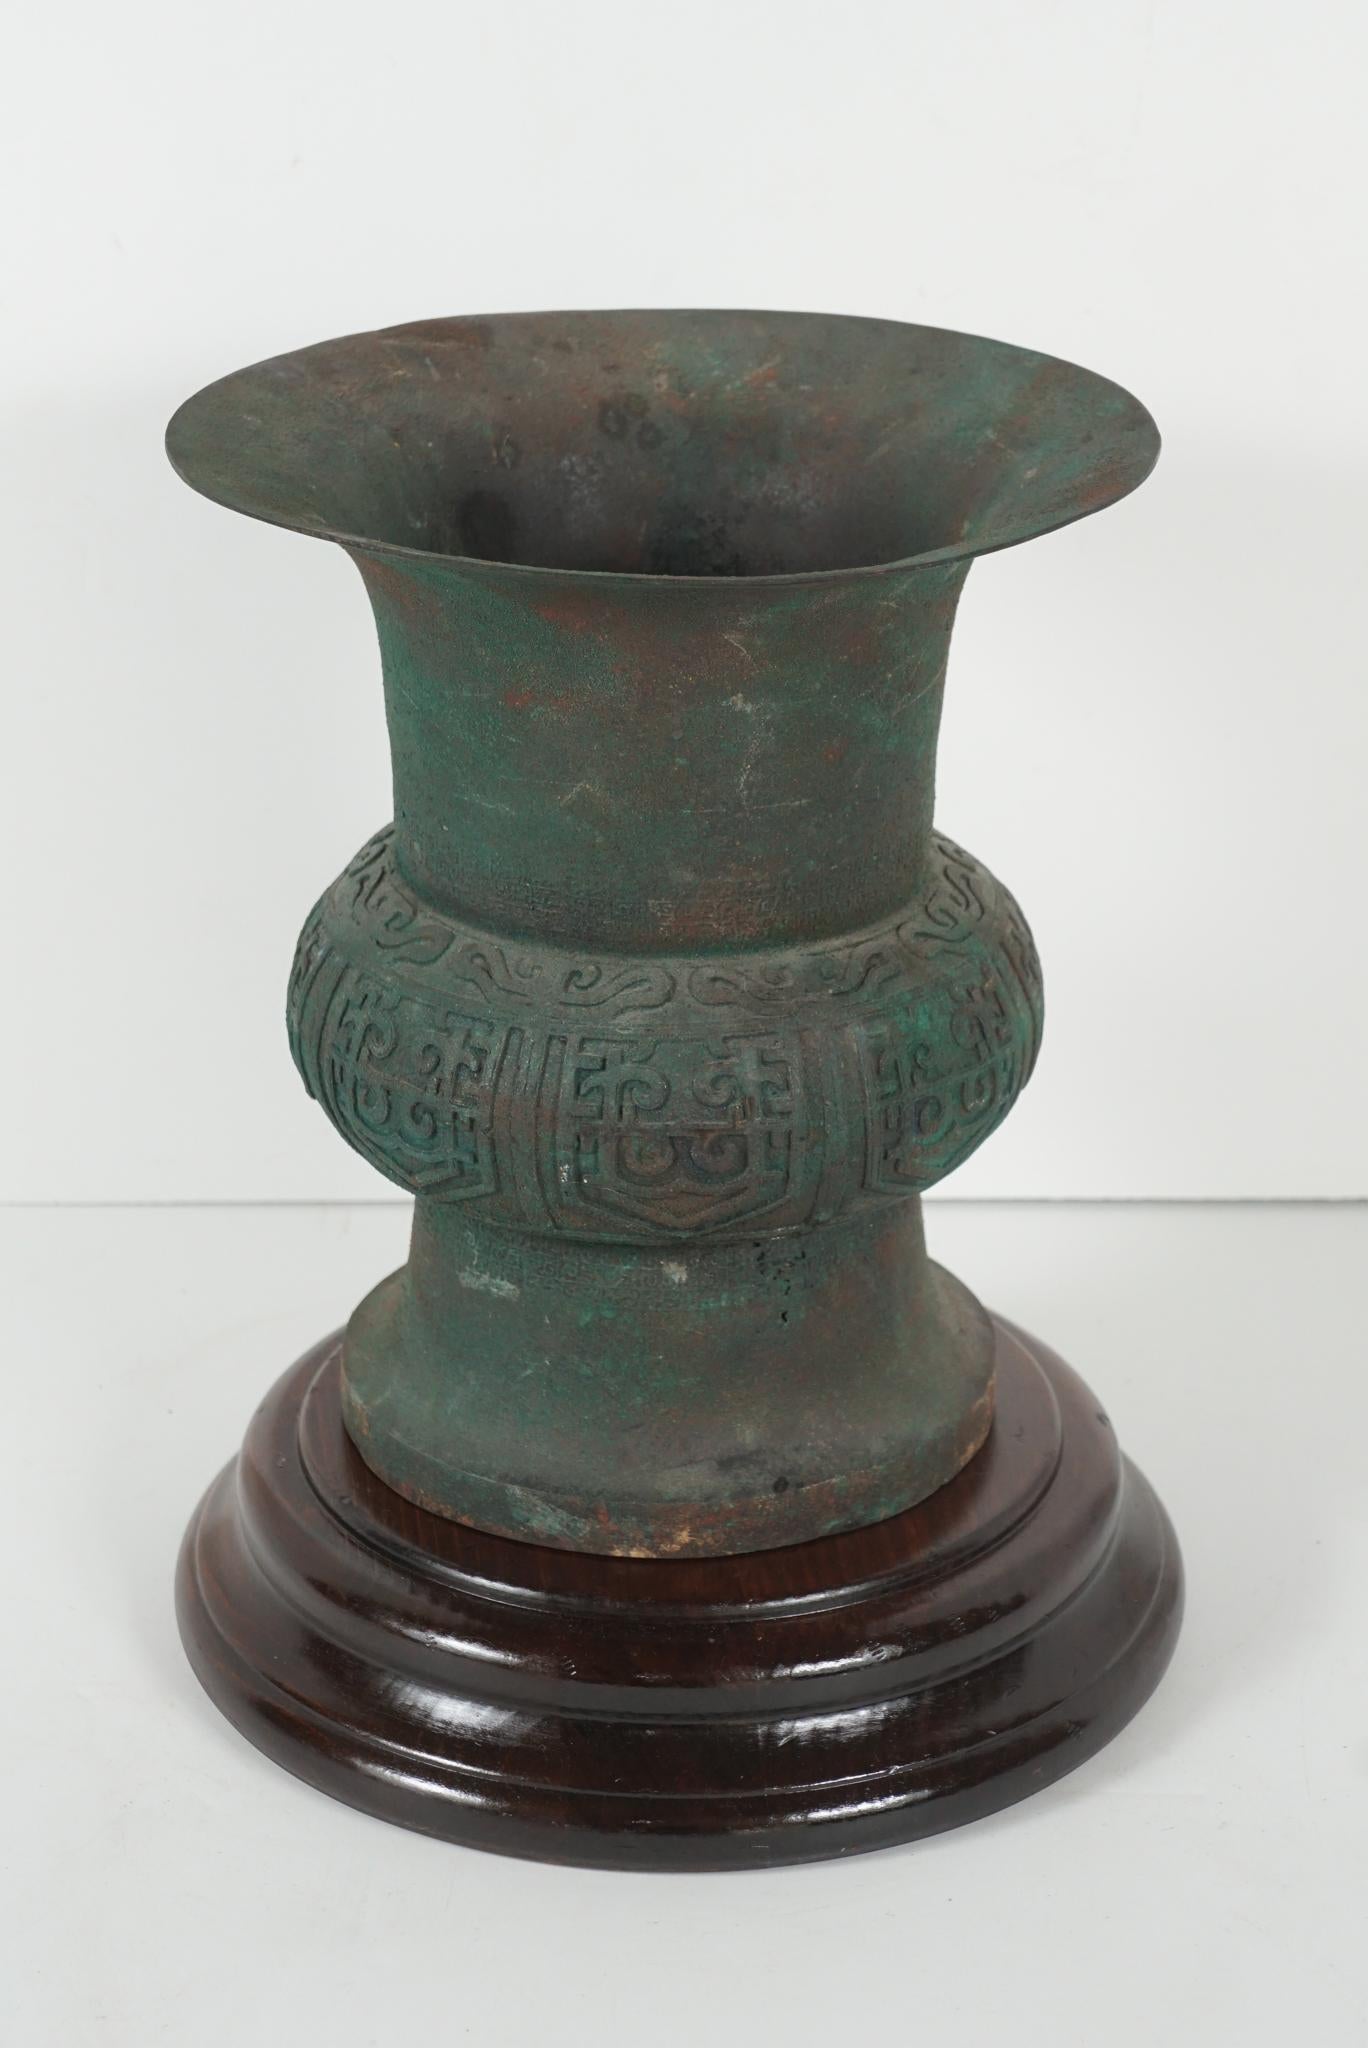 Diese chinesische Urne aus Bronzeguss wurde zu Ehren der feinen Gefäße aus der Shang-, Zhou- und Han-Zeit hergestellt. Dieses im späten 18. und frühen 19. Jahrhundert (ca. 1790-1800) gegossene Werk weist eine ausgezeichnete Patina auf, die zwar